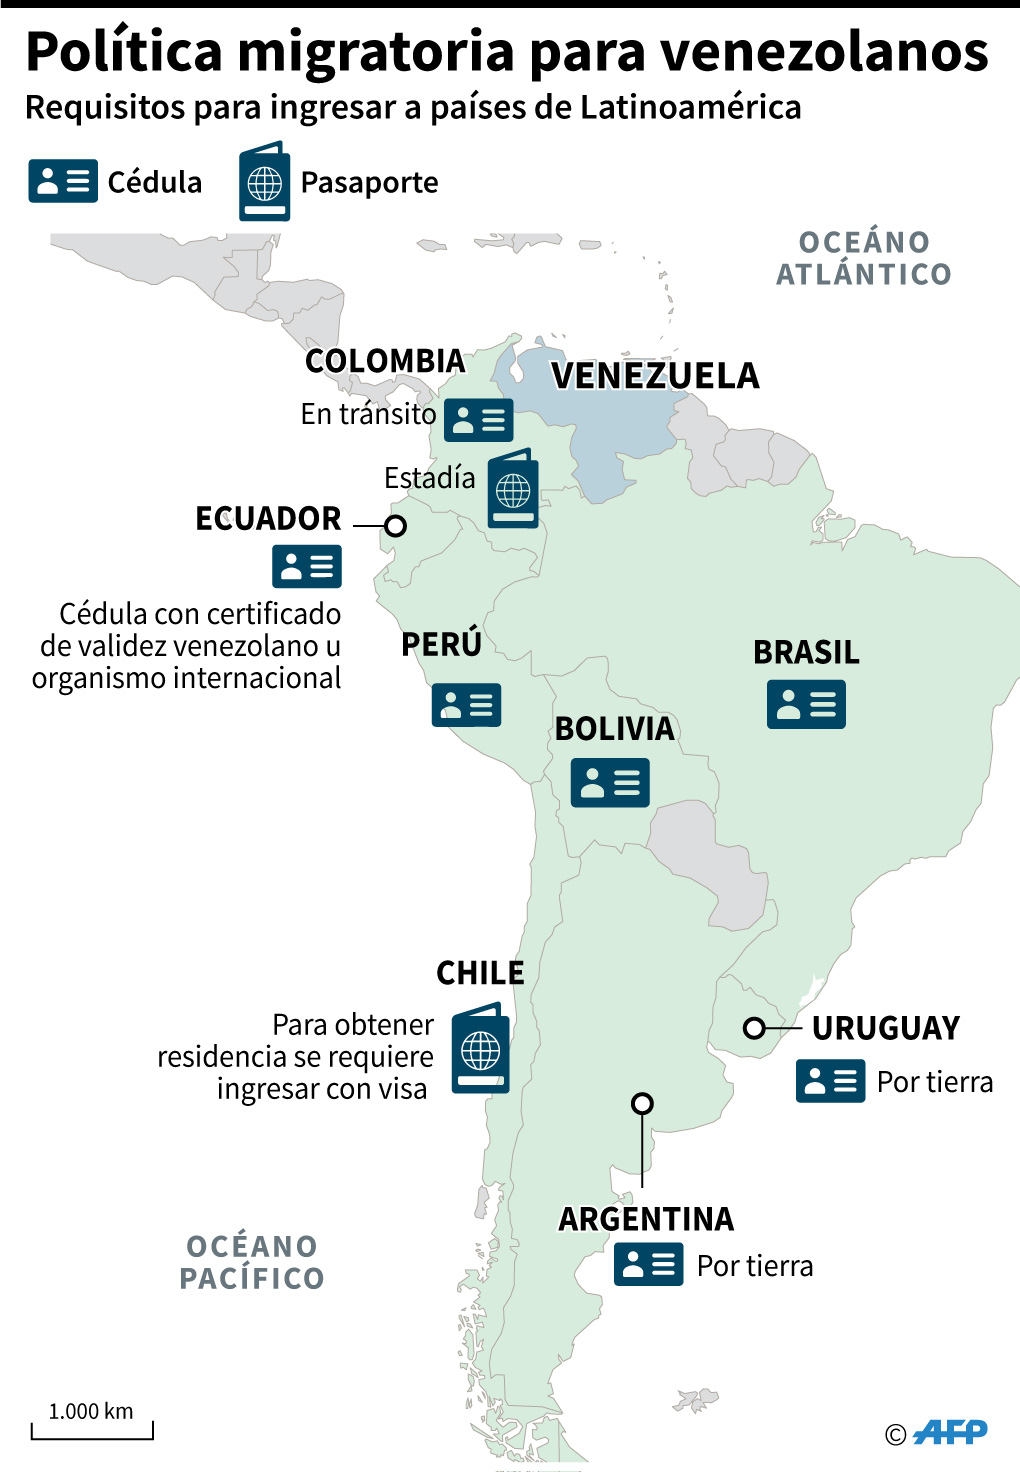 Acnur destaca solidaridad latinoamericana en éxodo de venezolanos